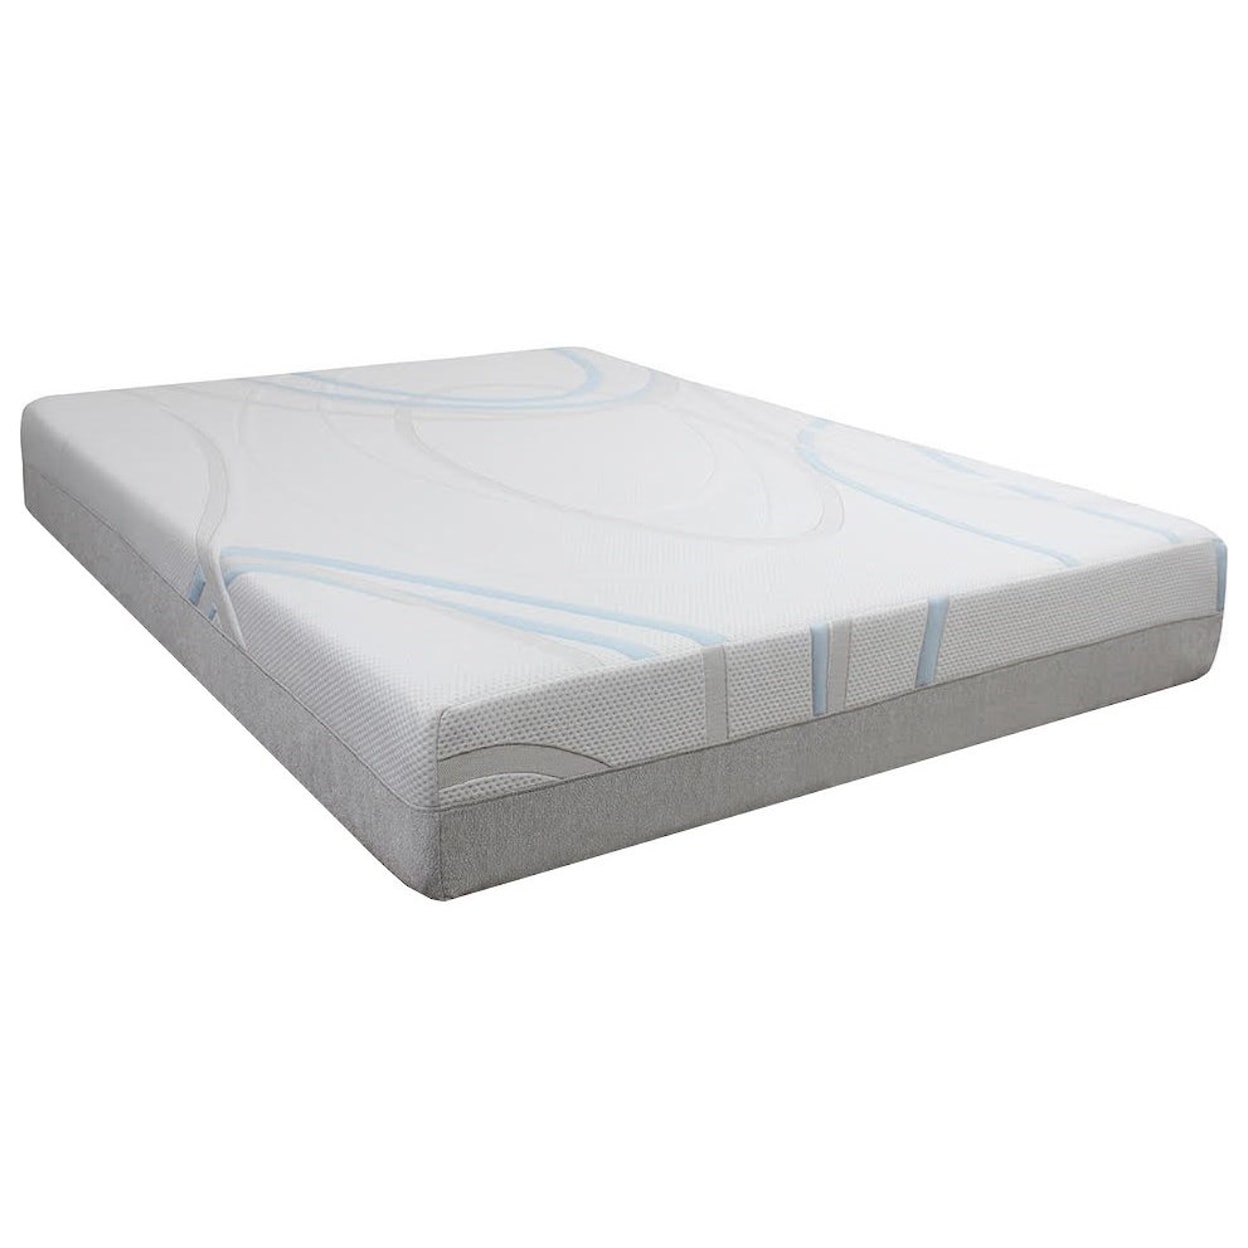 BedTech Slumber 8 Full 8" Memory Foam Mattress Set